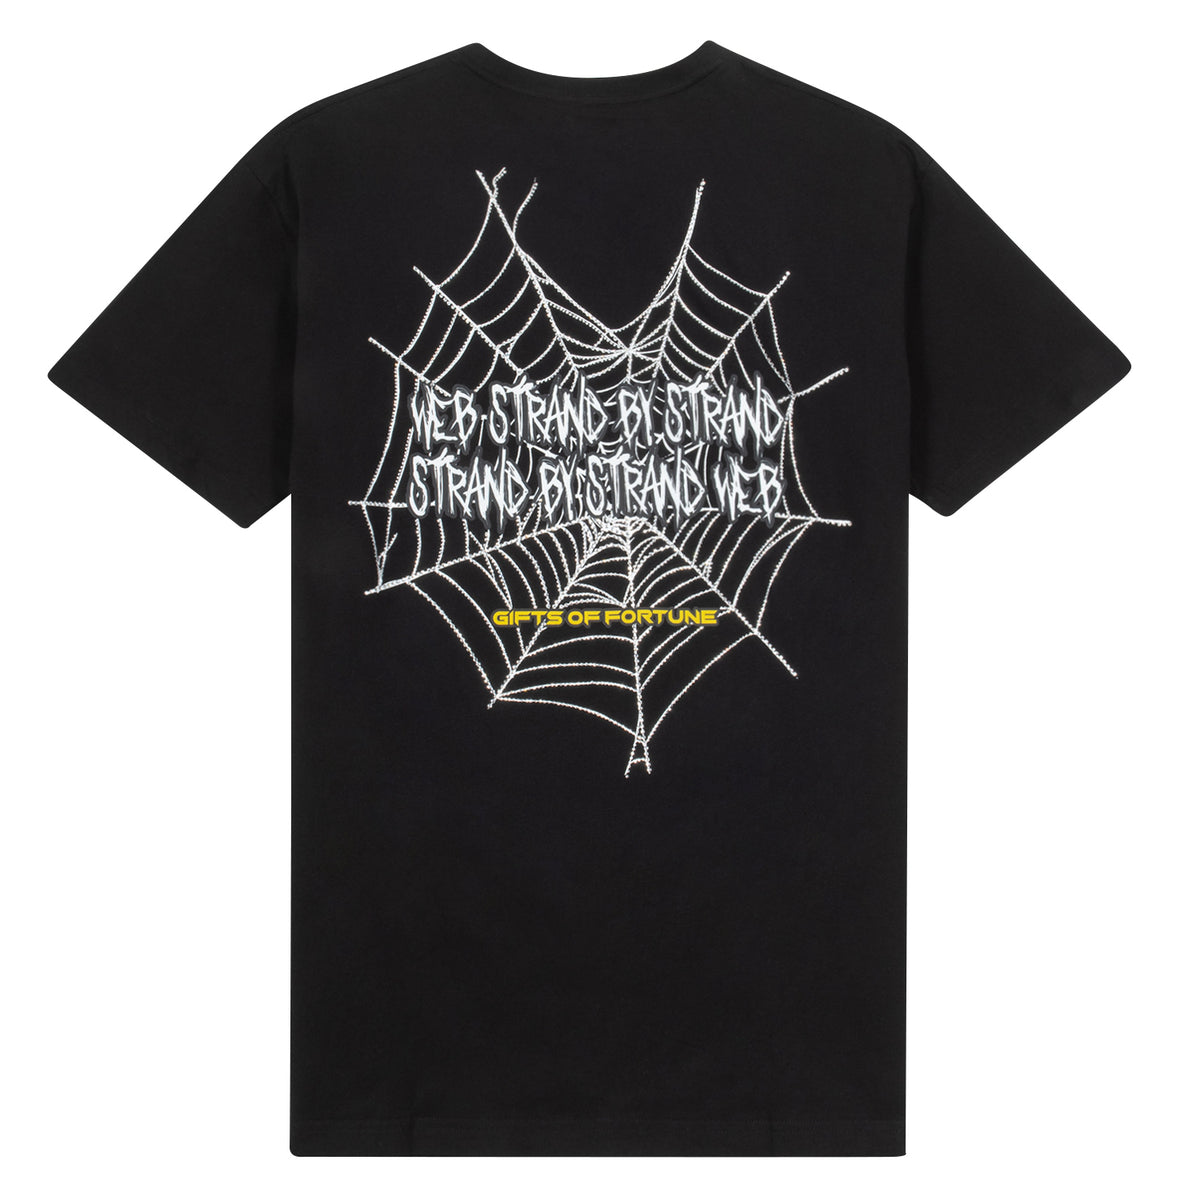 Swarovski crystal spider web tshirt